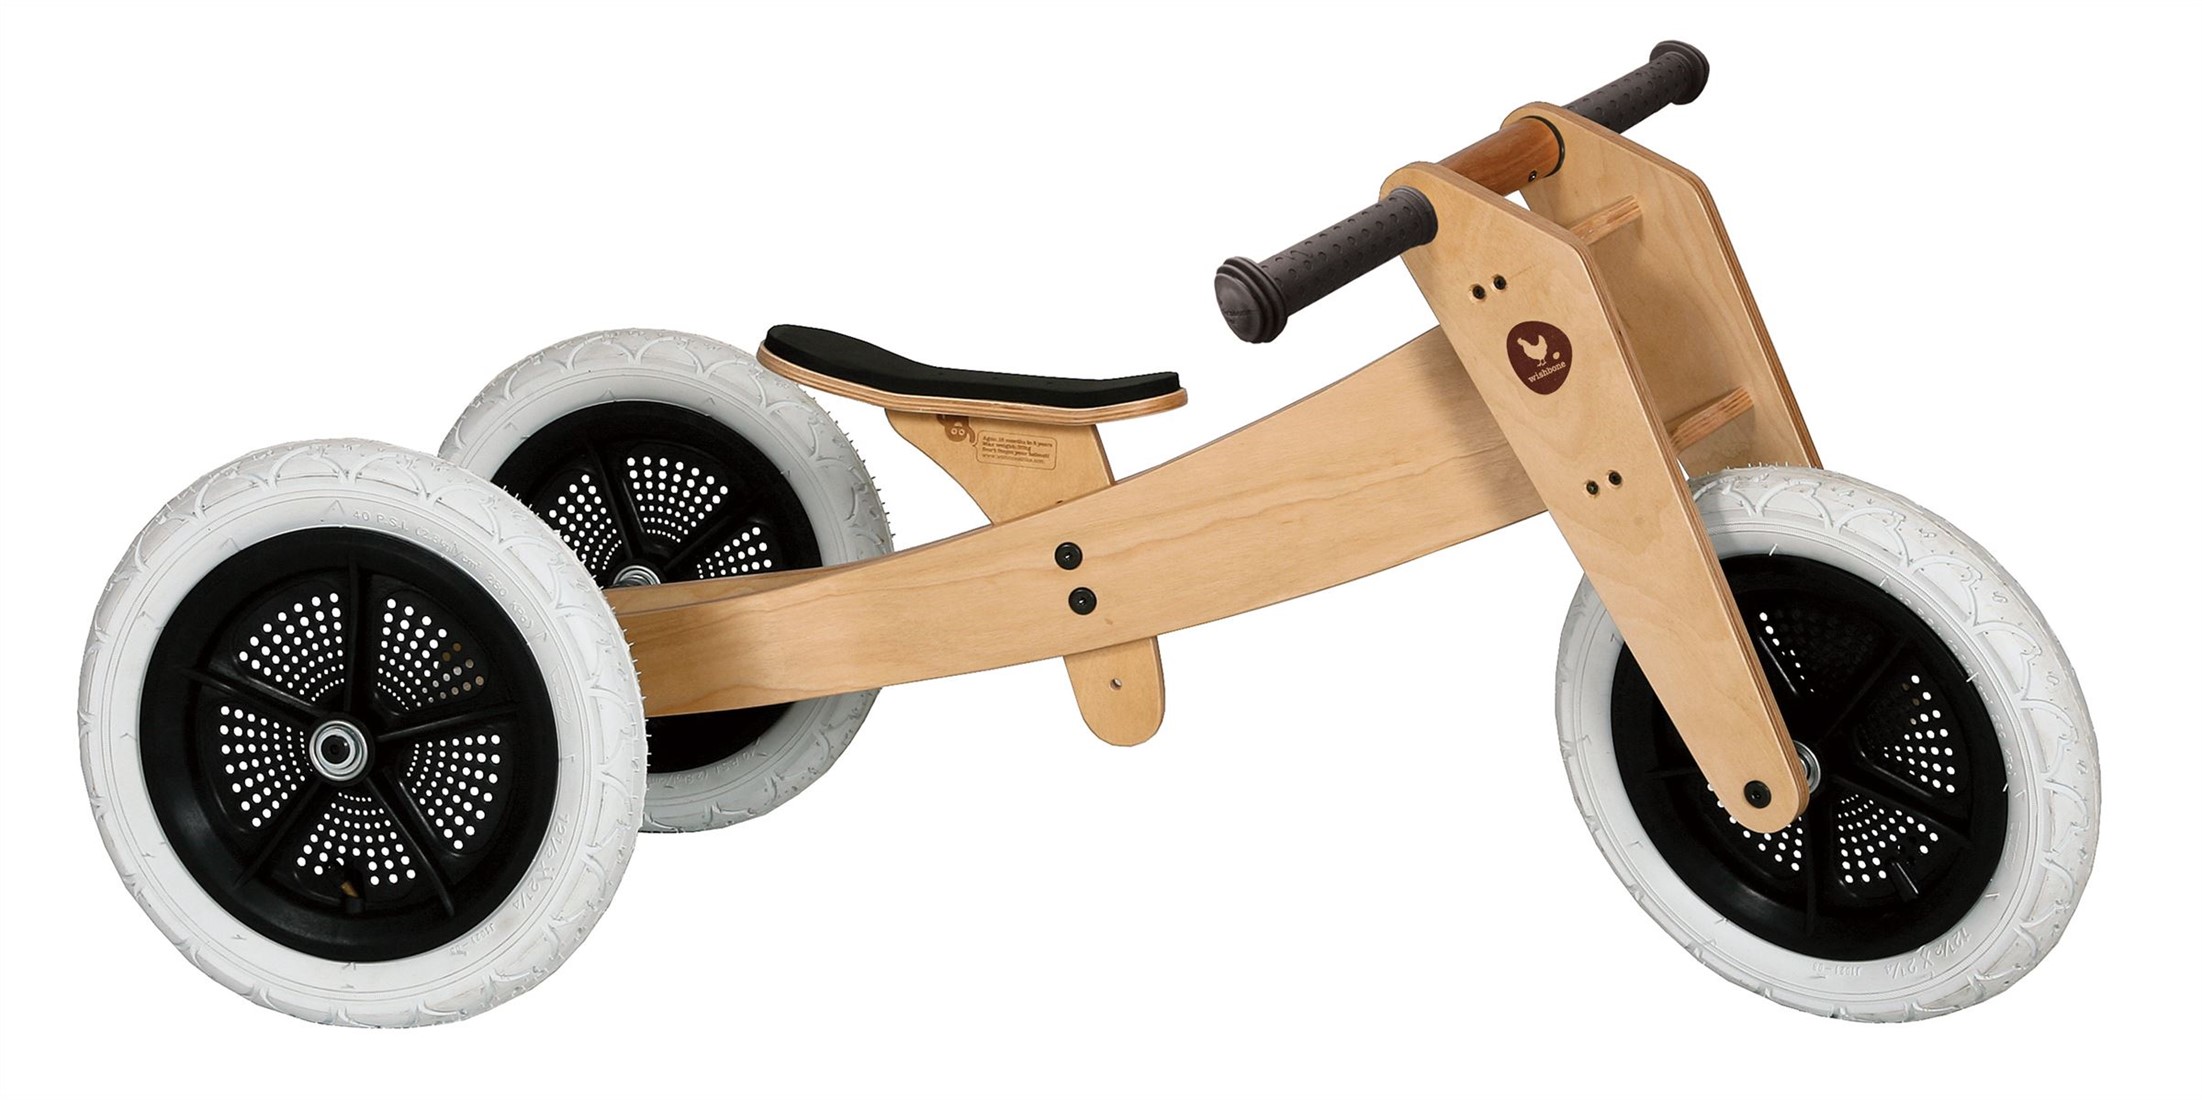 Genre Proficiat Gemiddeld Wishbonebike Original 3-in-1 houten loopfiets - Naturel kopen?